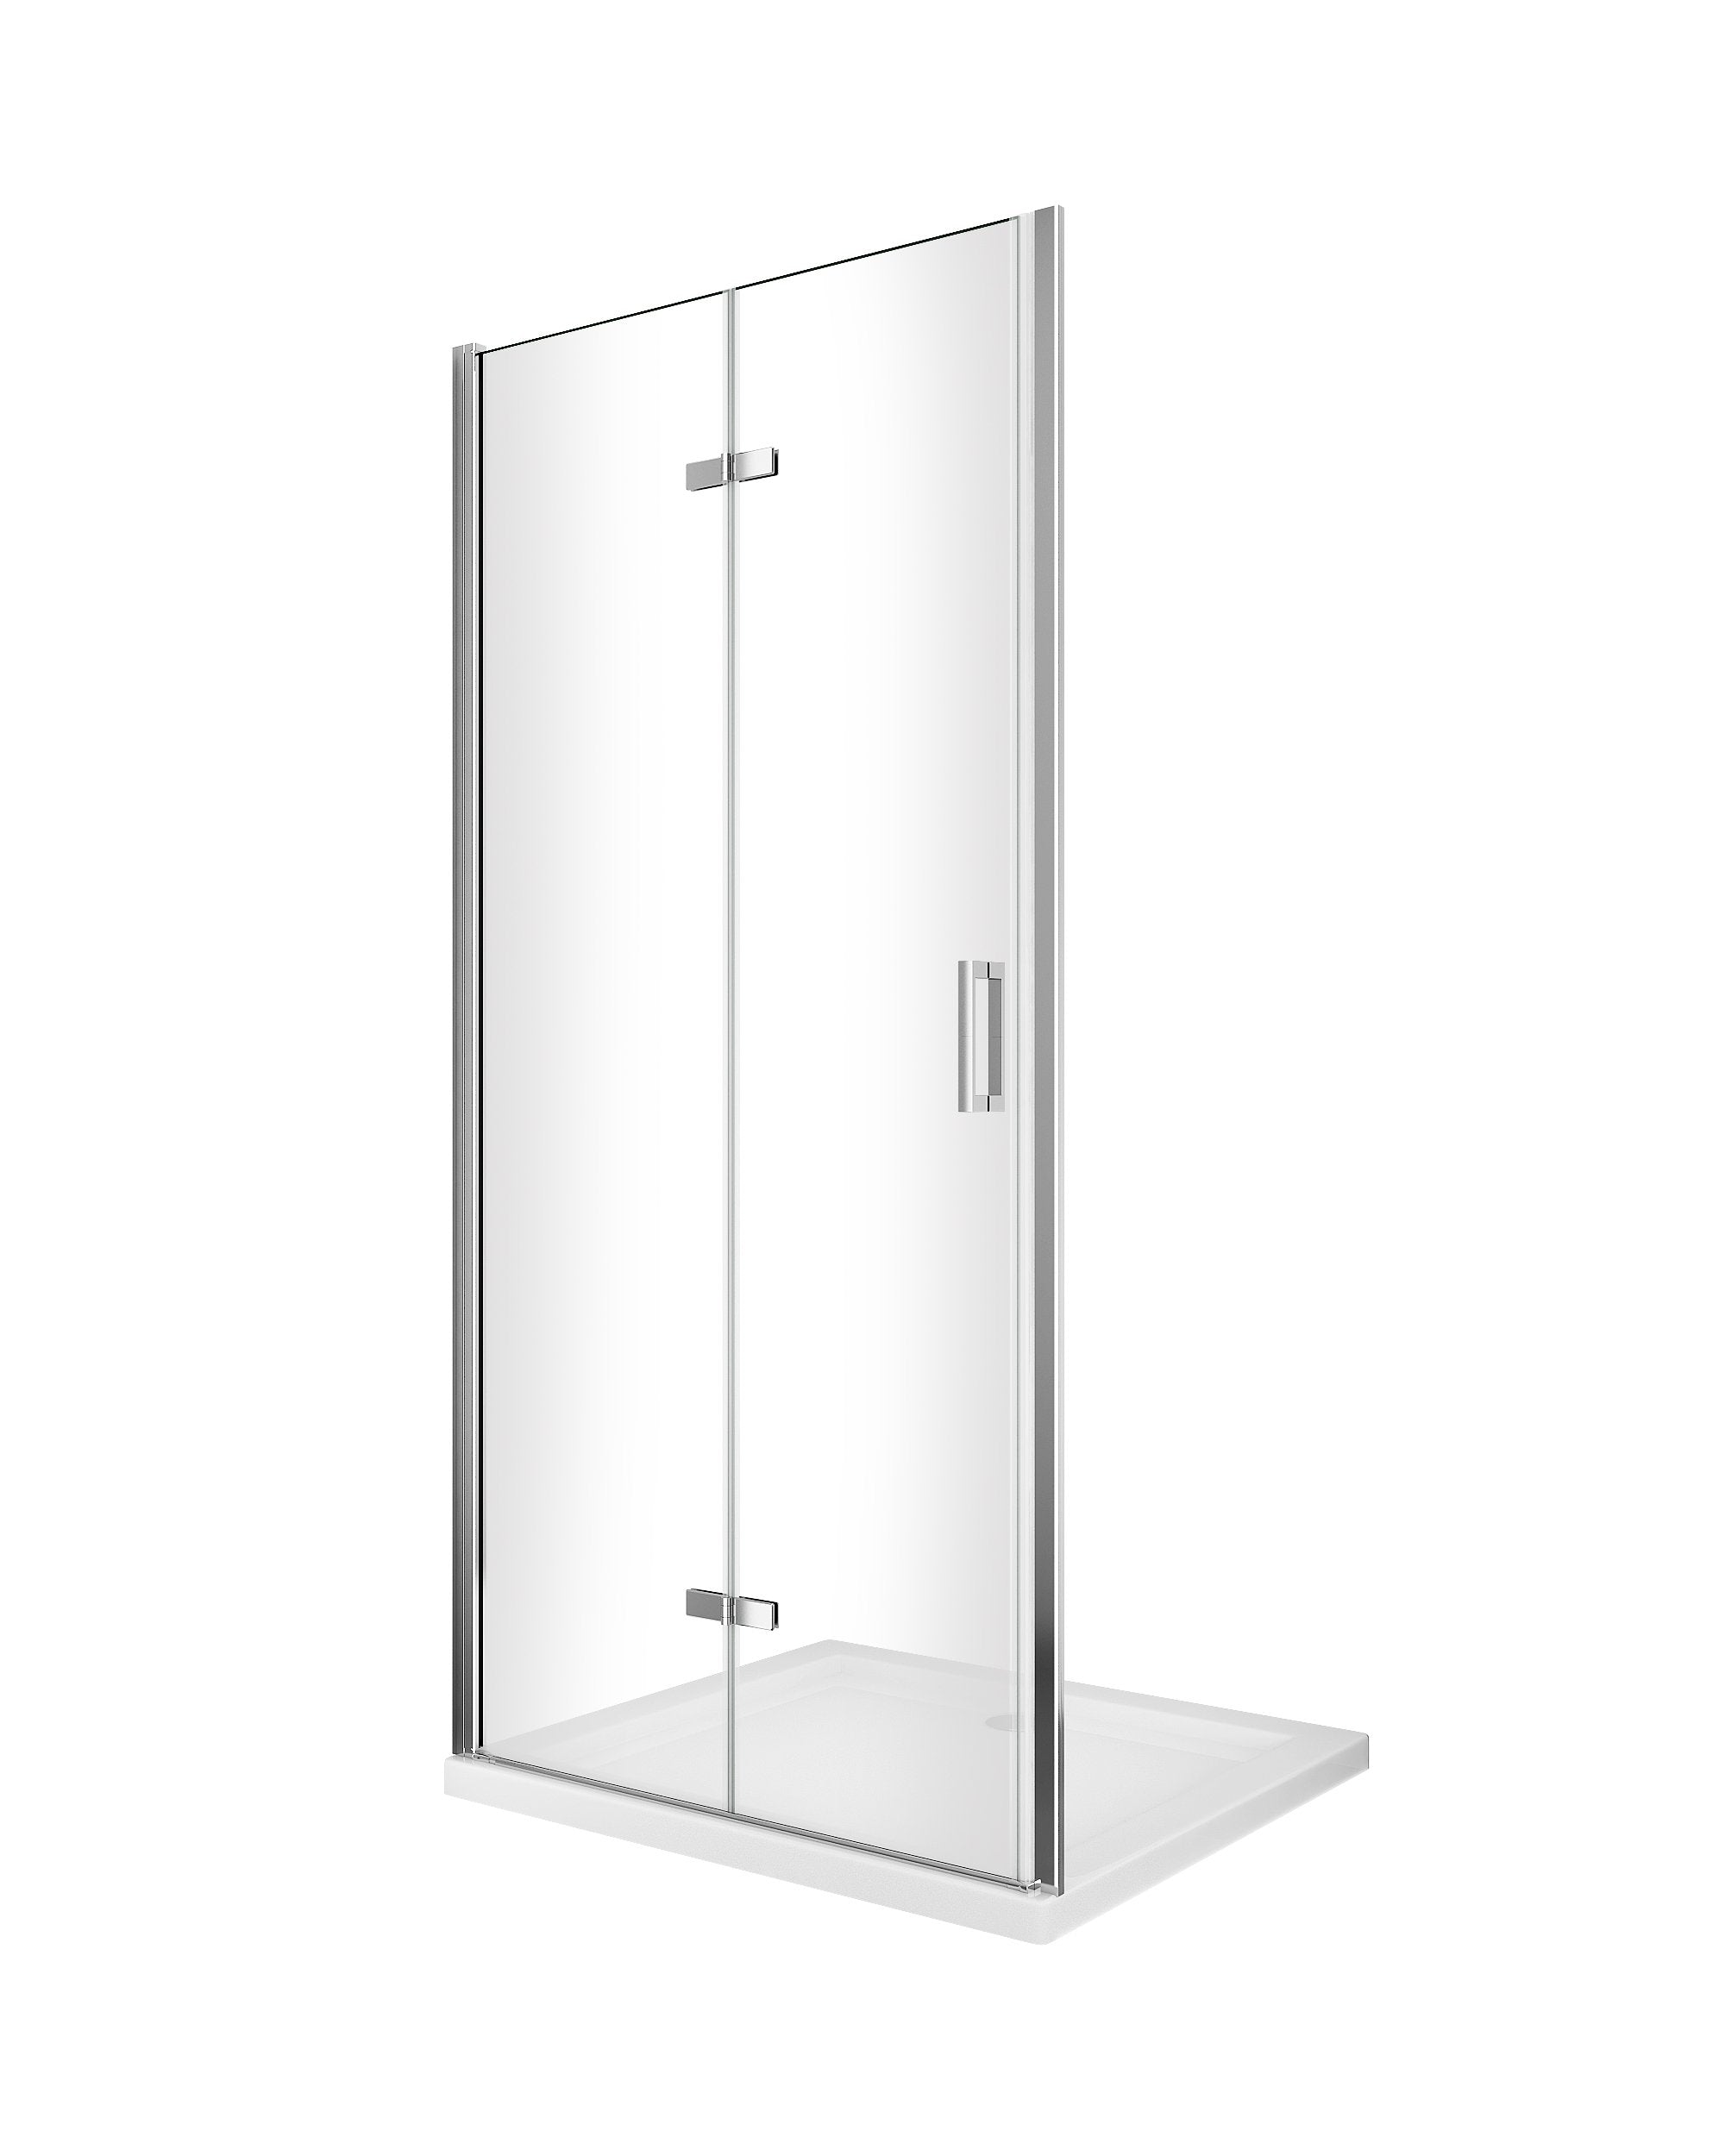 Porta box doccia con apertura a libro pieghevole a soffietto per installazione in nicchia H 190 cromo trasparente anticalcare misura 68-71,5